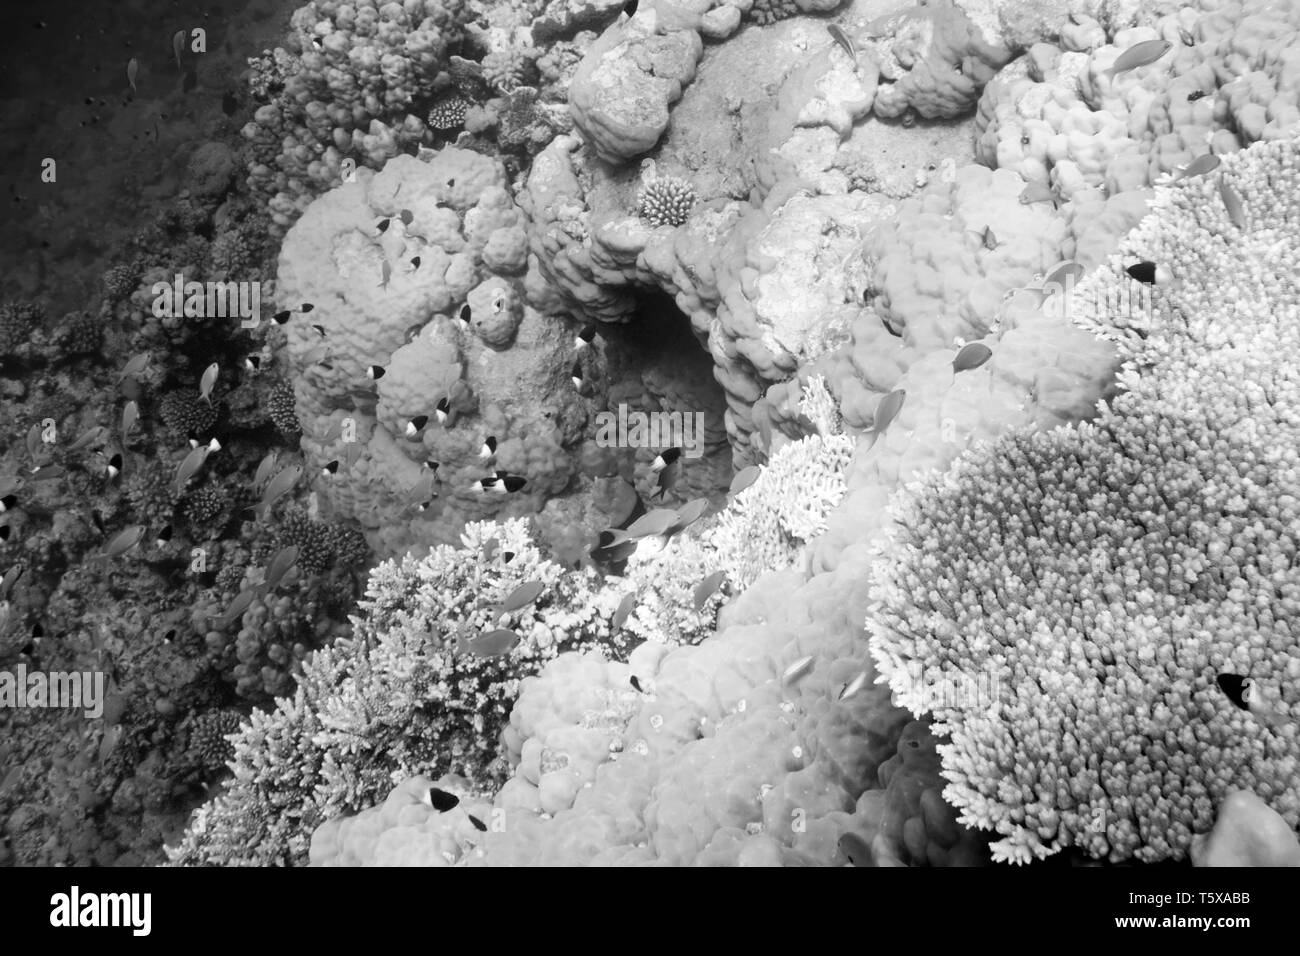 Unterwasserwelt des Roten Meeres in Ägypten. Salzwasser Fische und Korallenriffe. Höhle in der Tiefsee. Bl; ack und weiß Foto Stockfoto